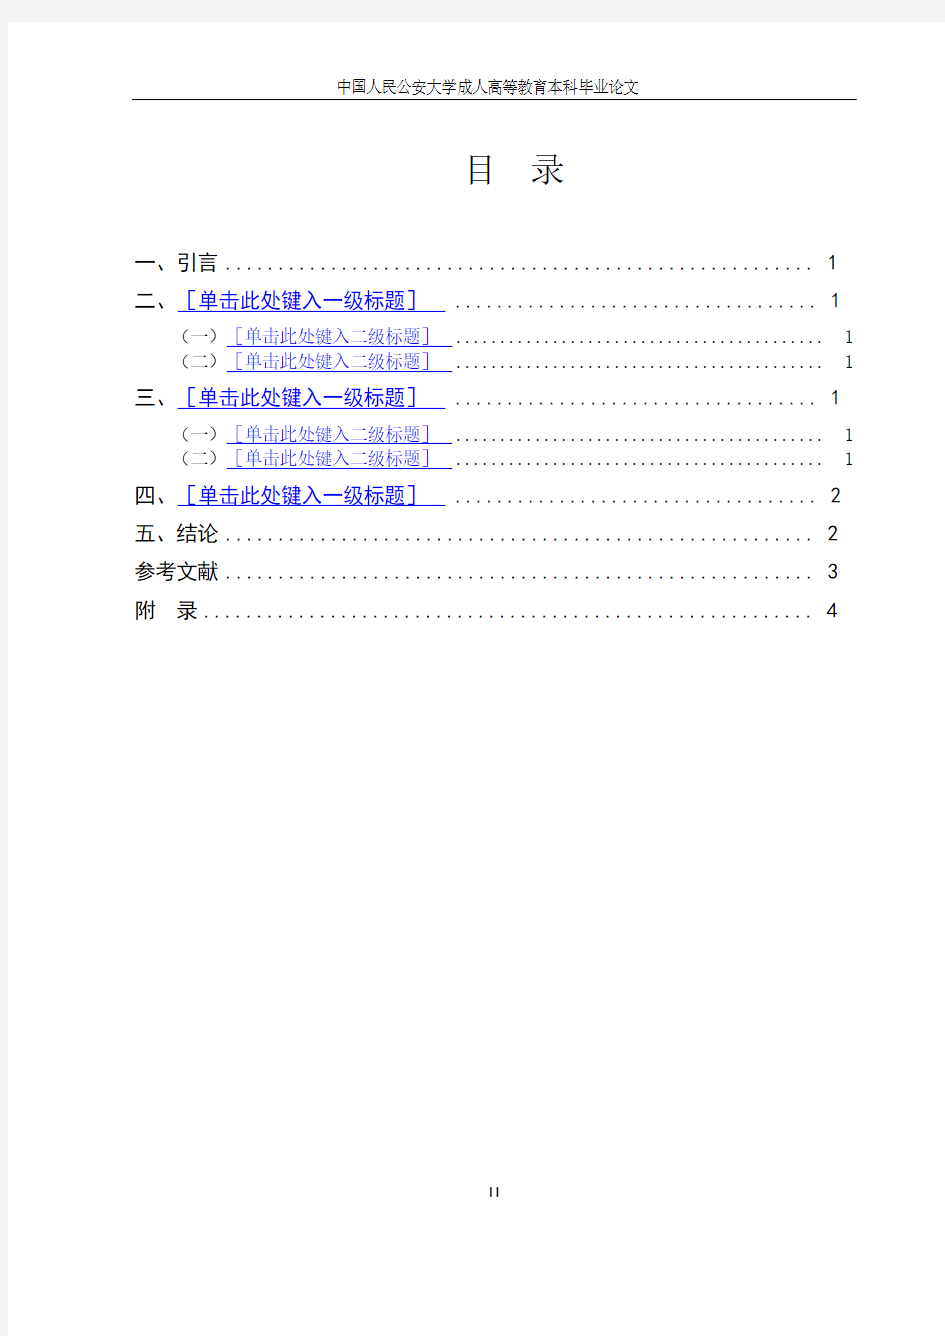 中国人民公安大学自考毕业论文格式、排版及注释体例模板(1)